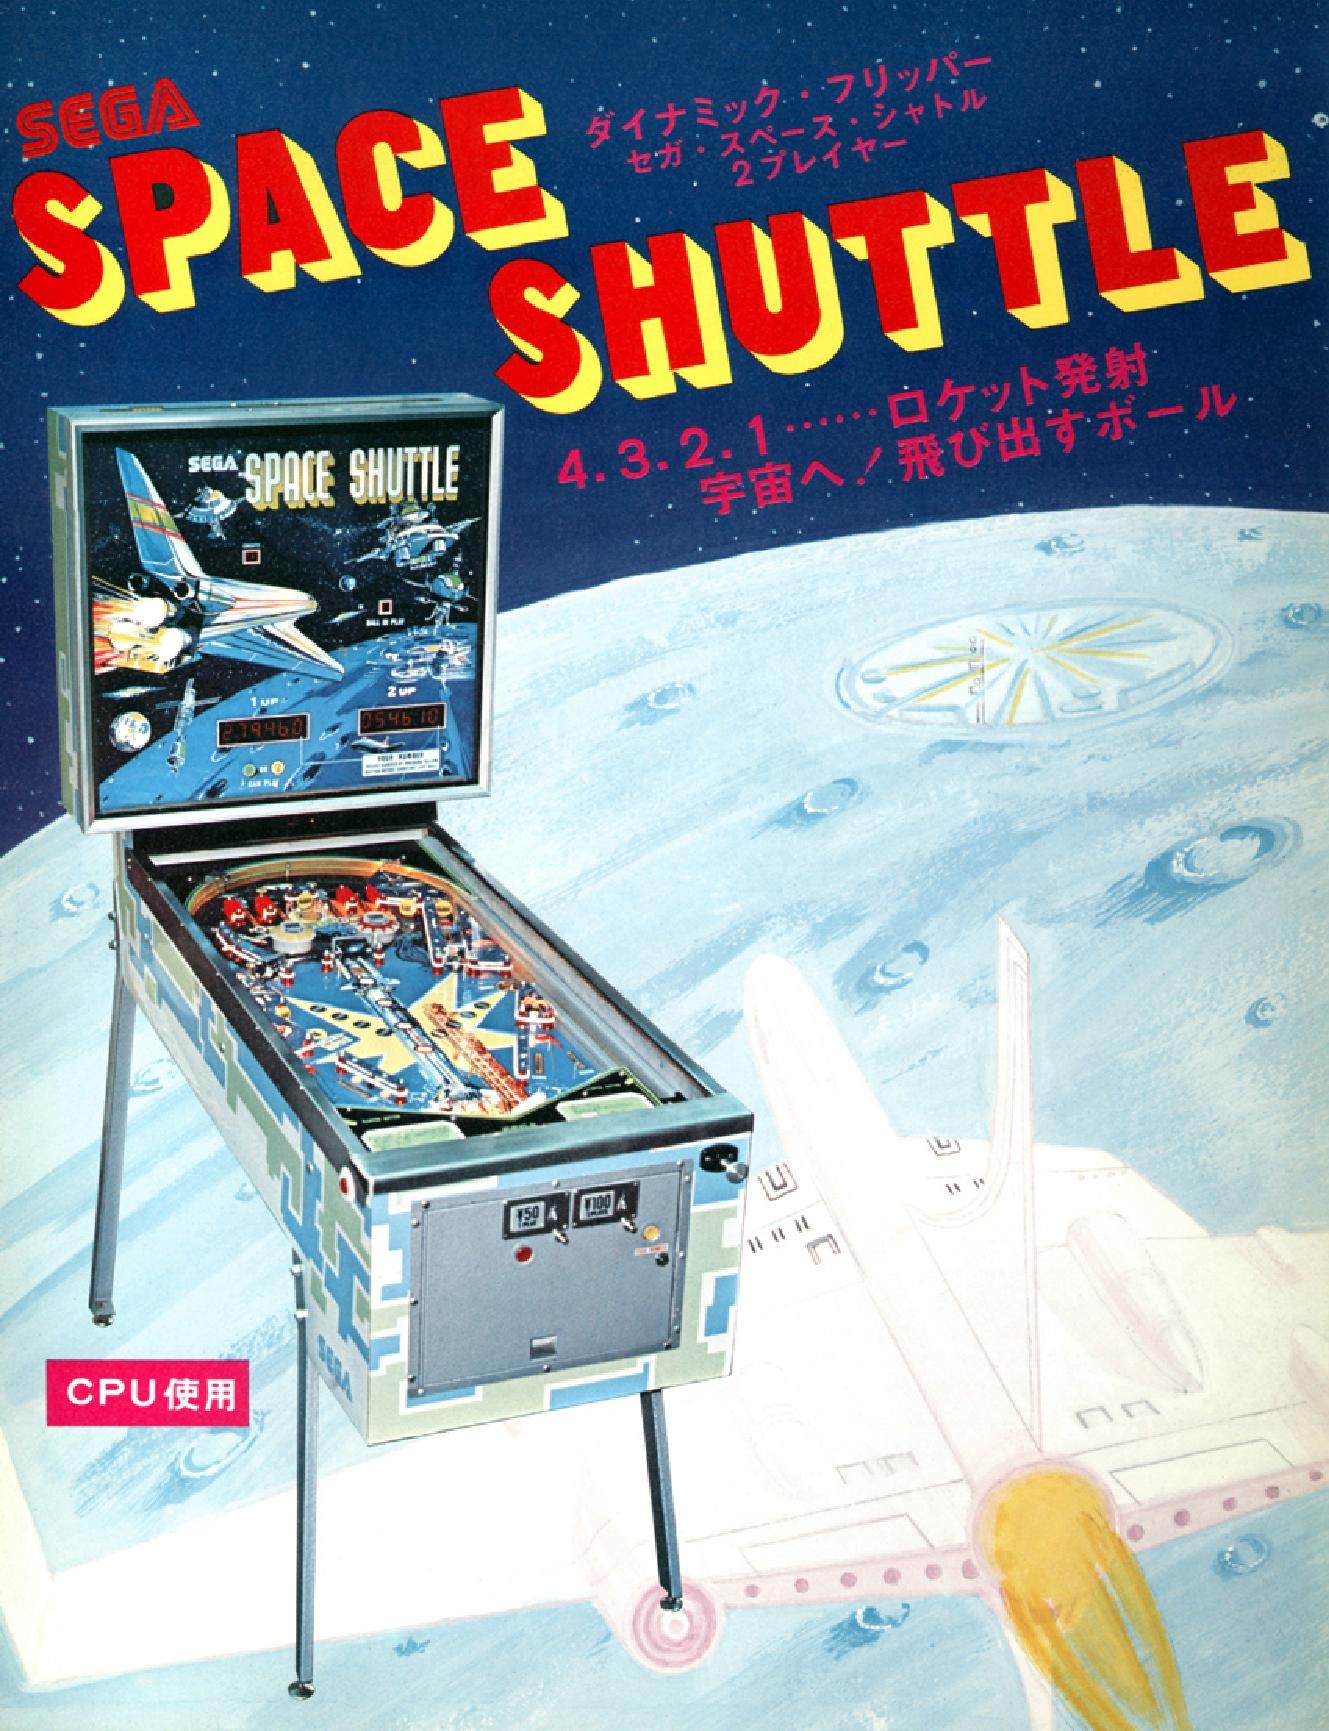 Space Shuttle Pinball Machine 04.jpg